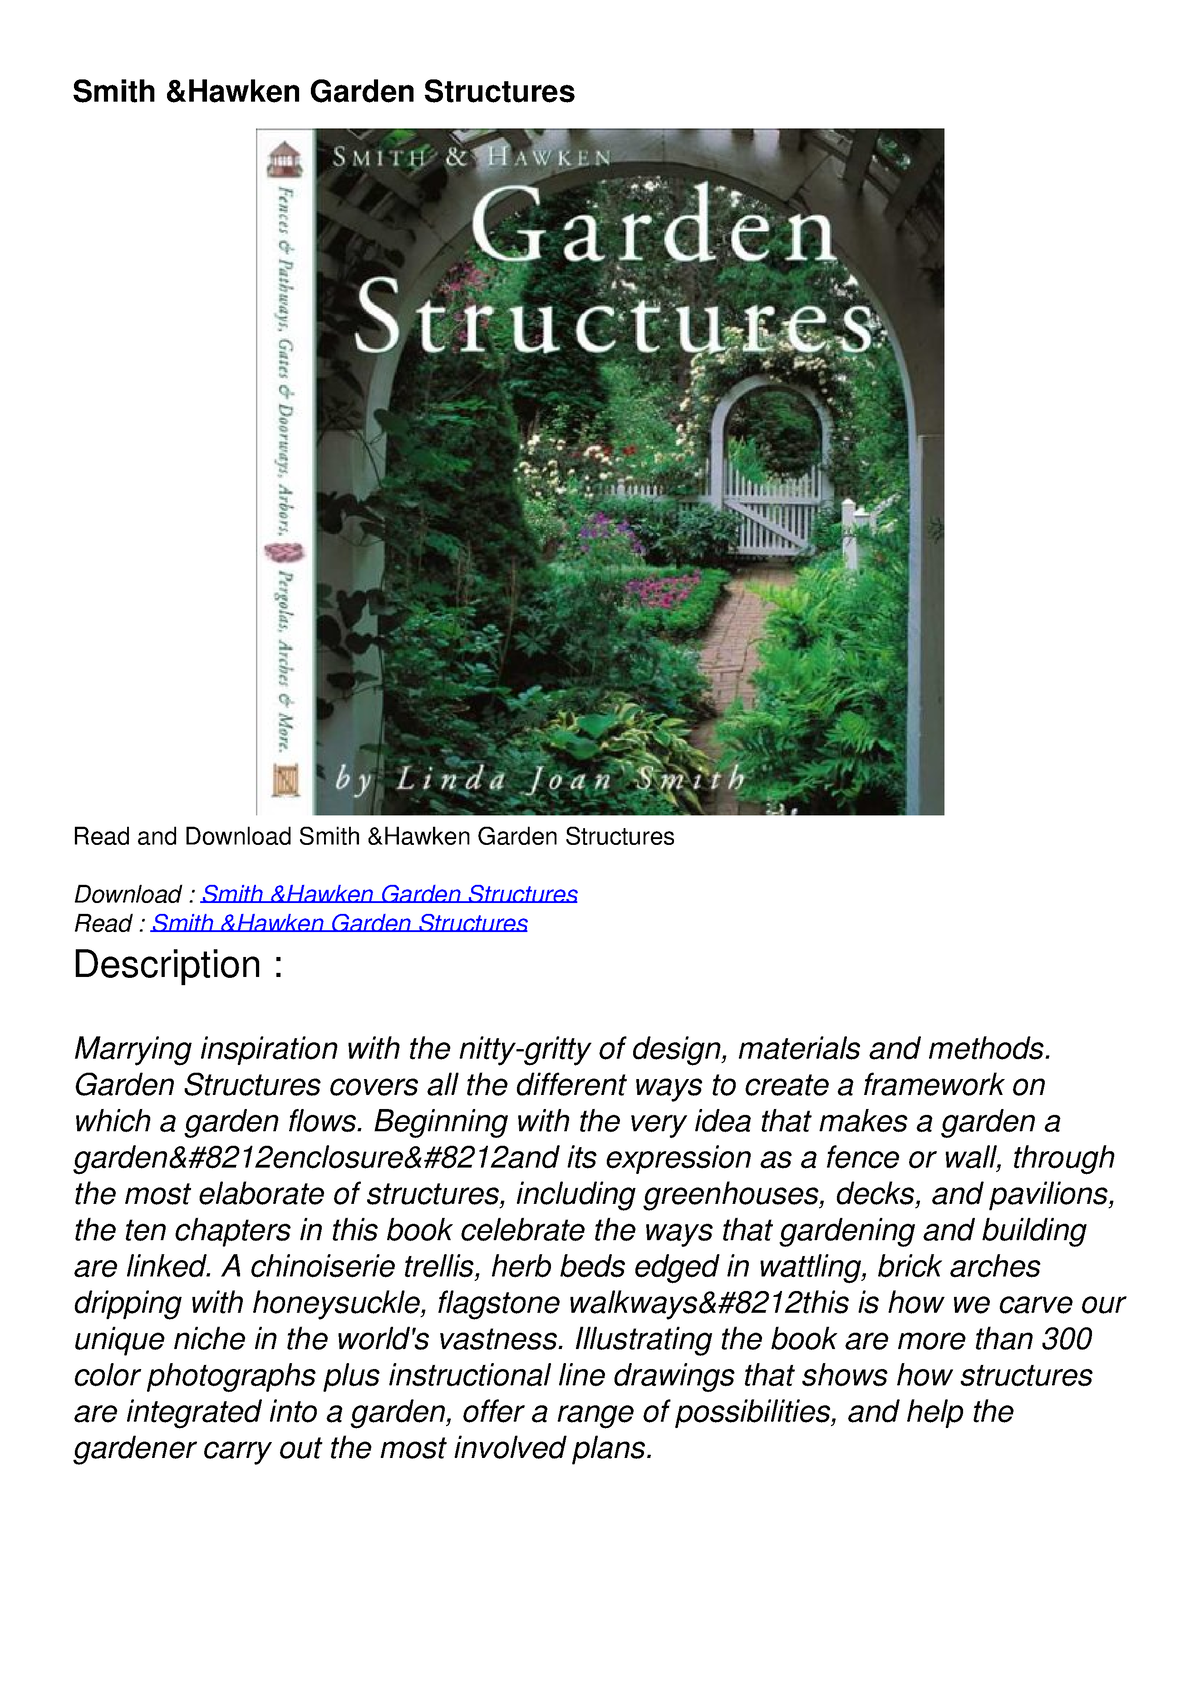 [READ DOWNLOAD] Smith Hawken Garden Structures - Smith &Hawken Garden ...